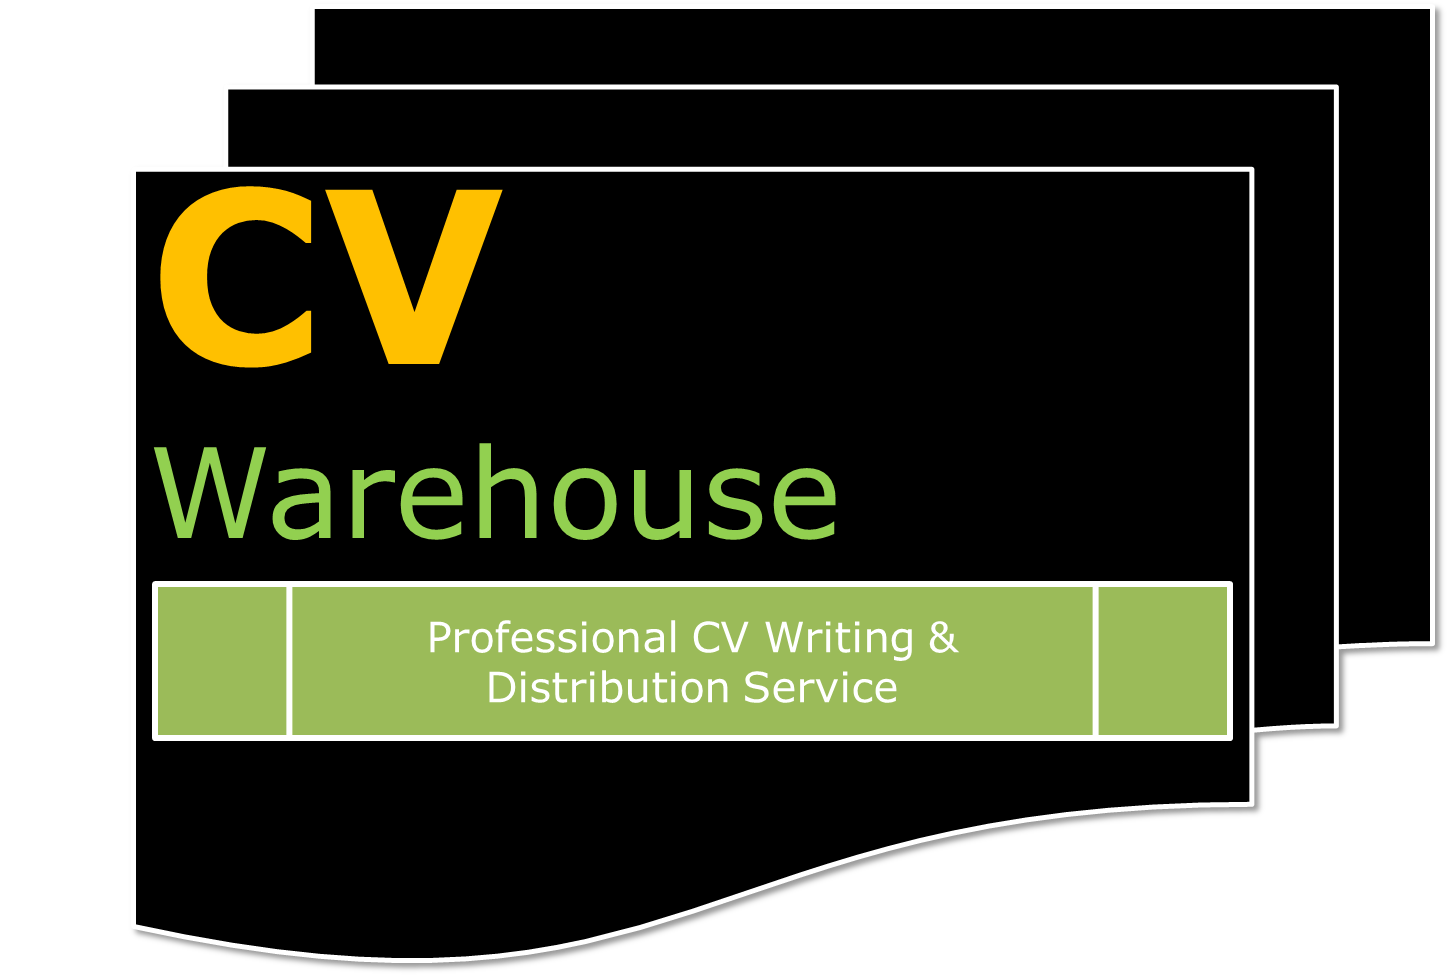 CV warehouse Logo